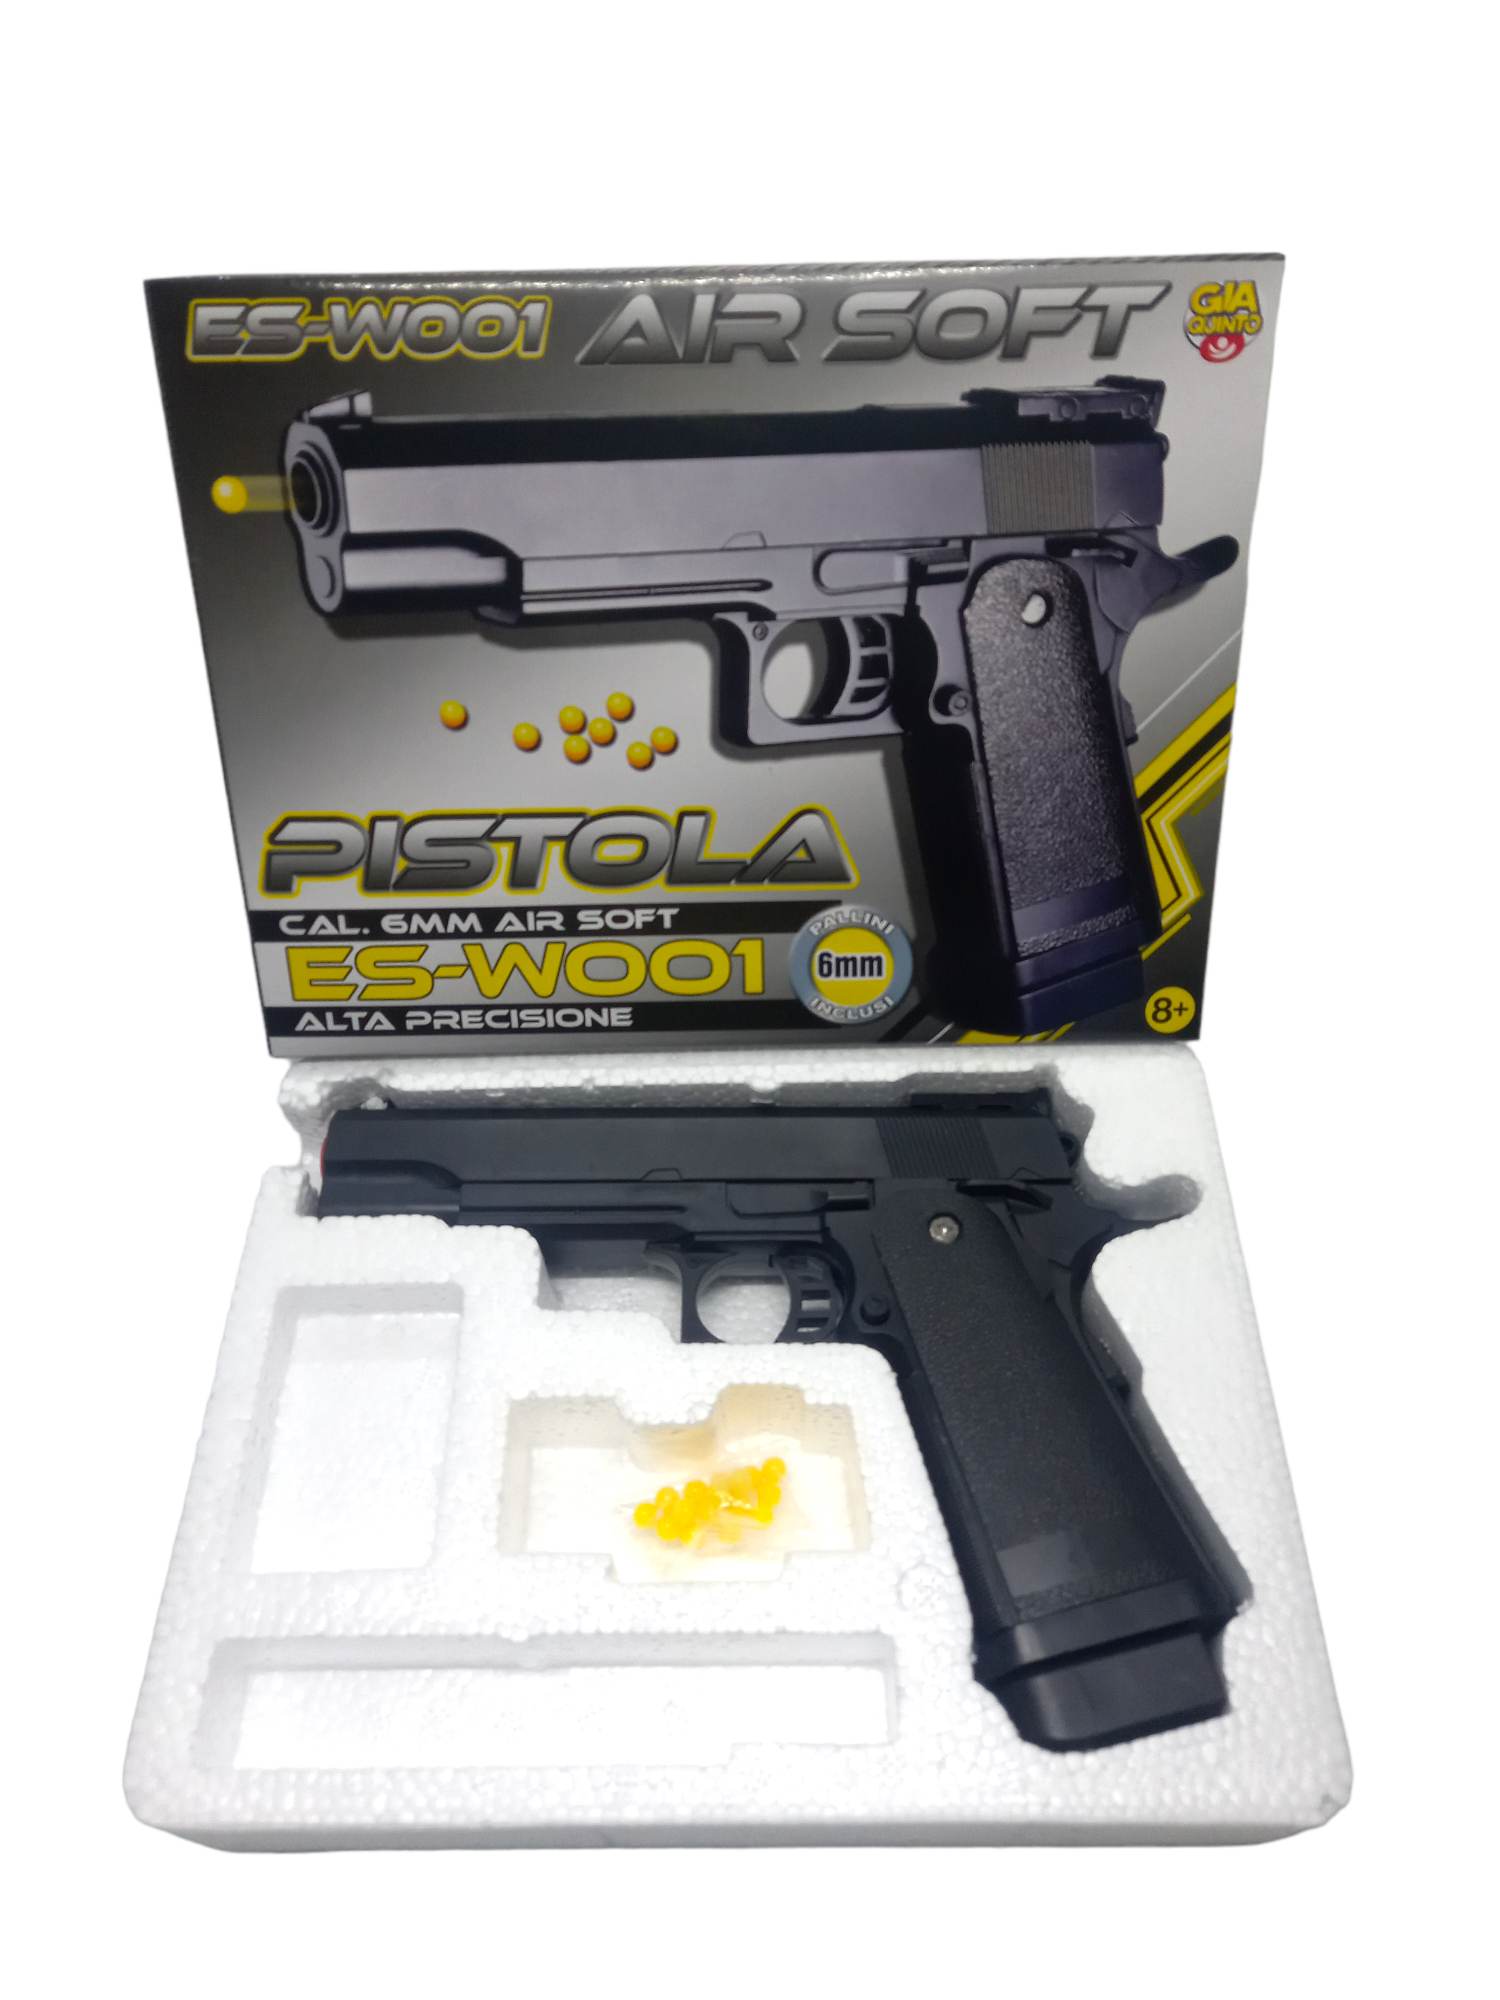 Airsoft pistol ES-W001